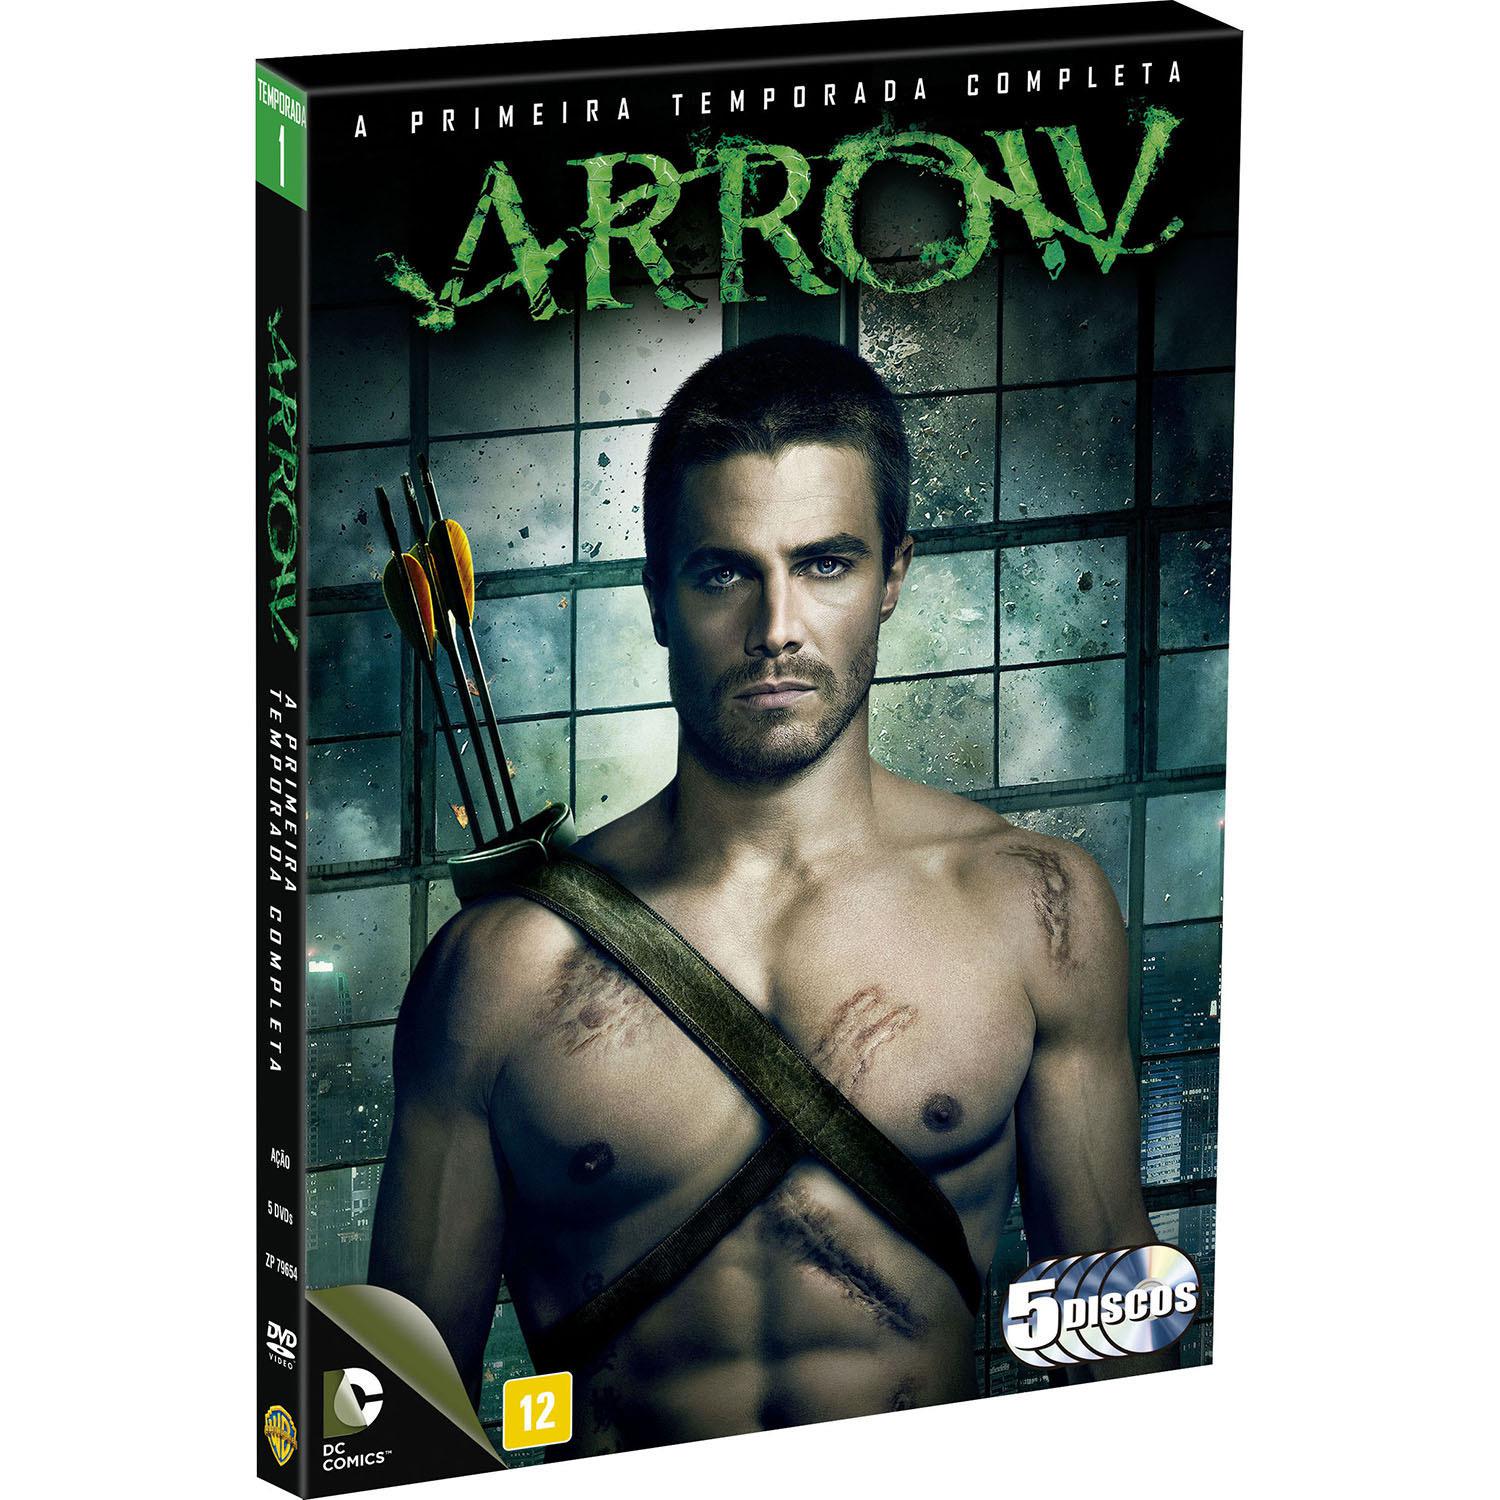 DVD Arrow - A Primeira Temporada Completa (5 Discos) é bom? Vale a pena?